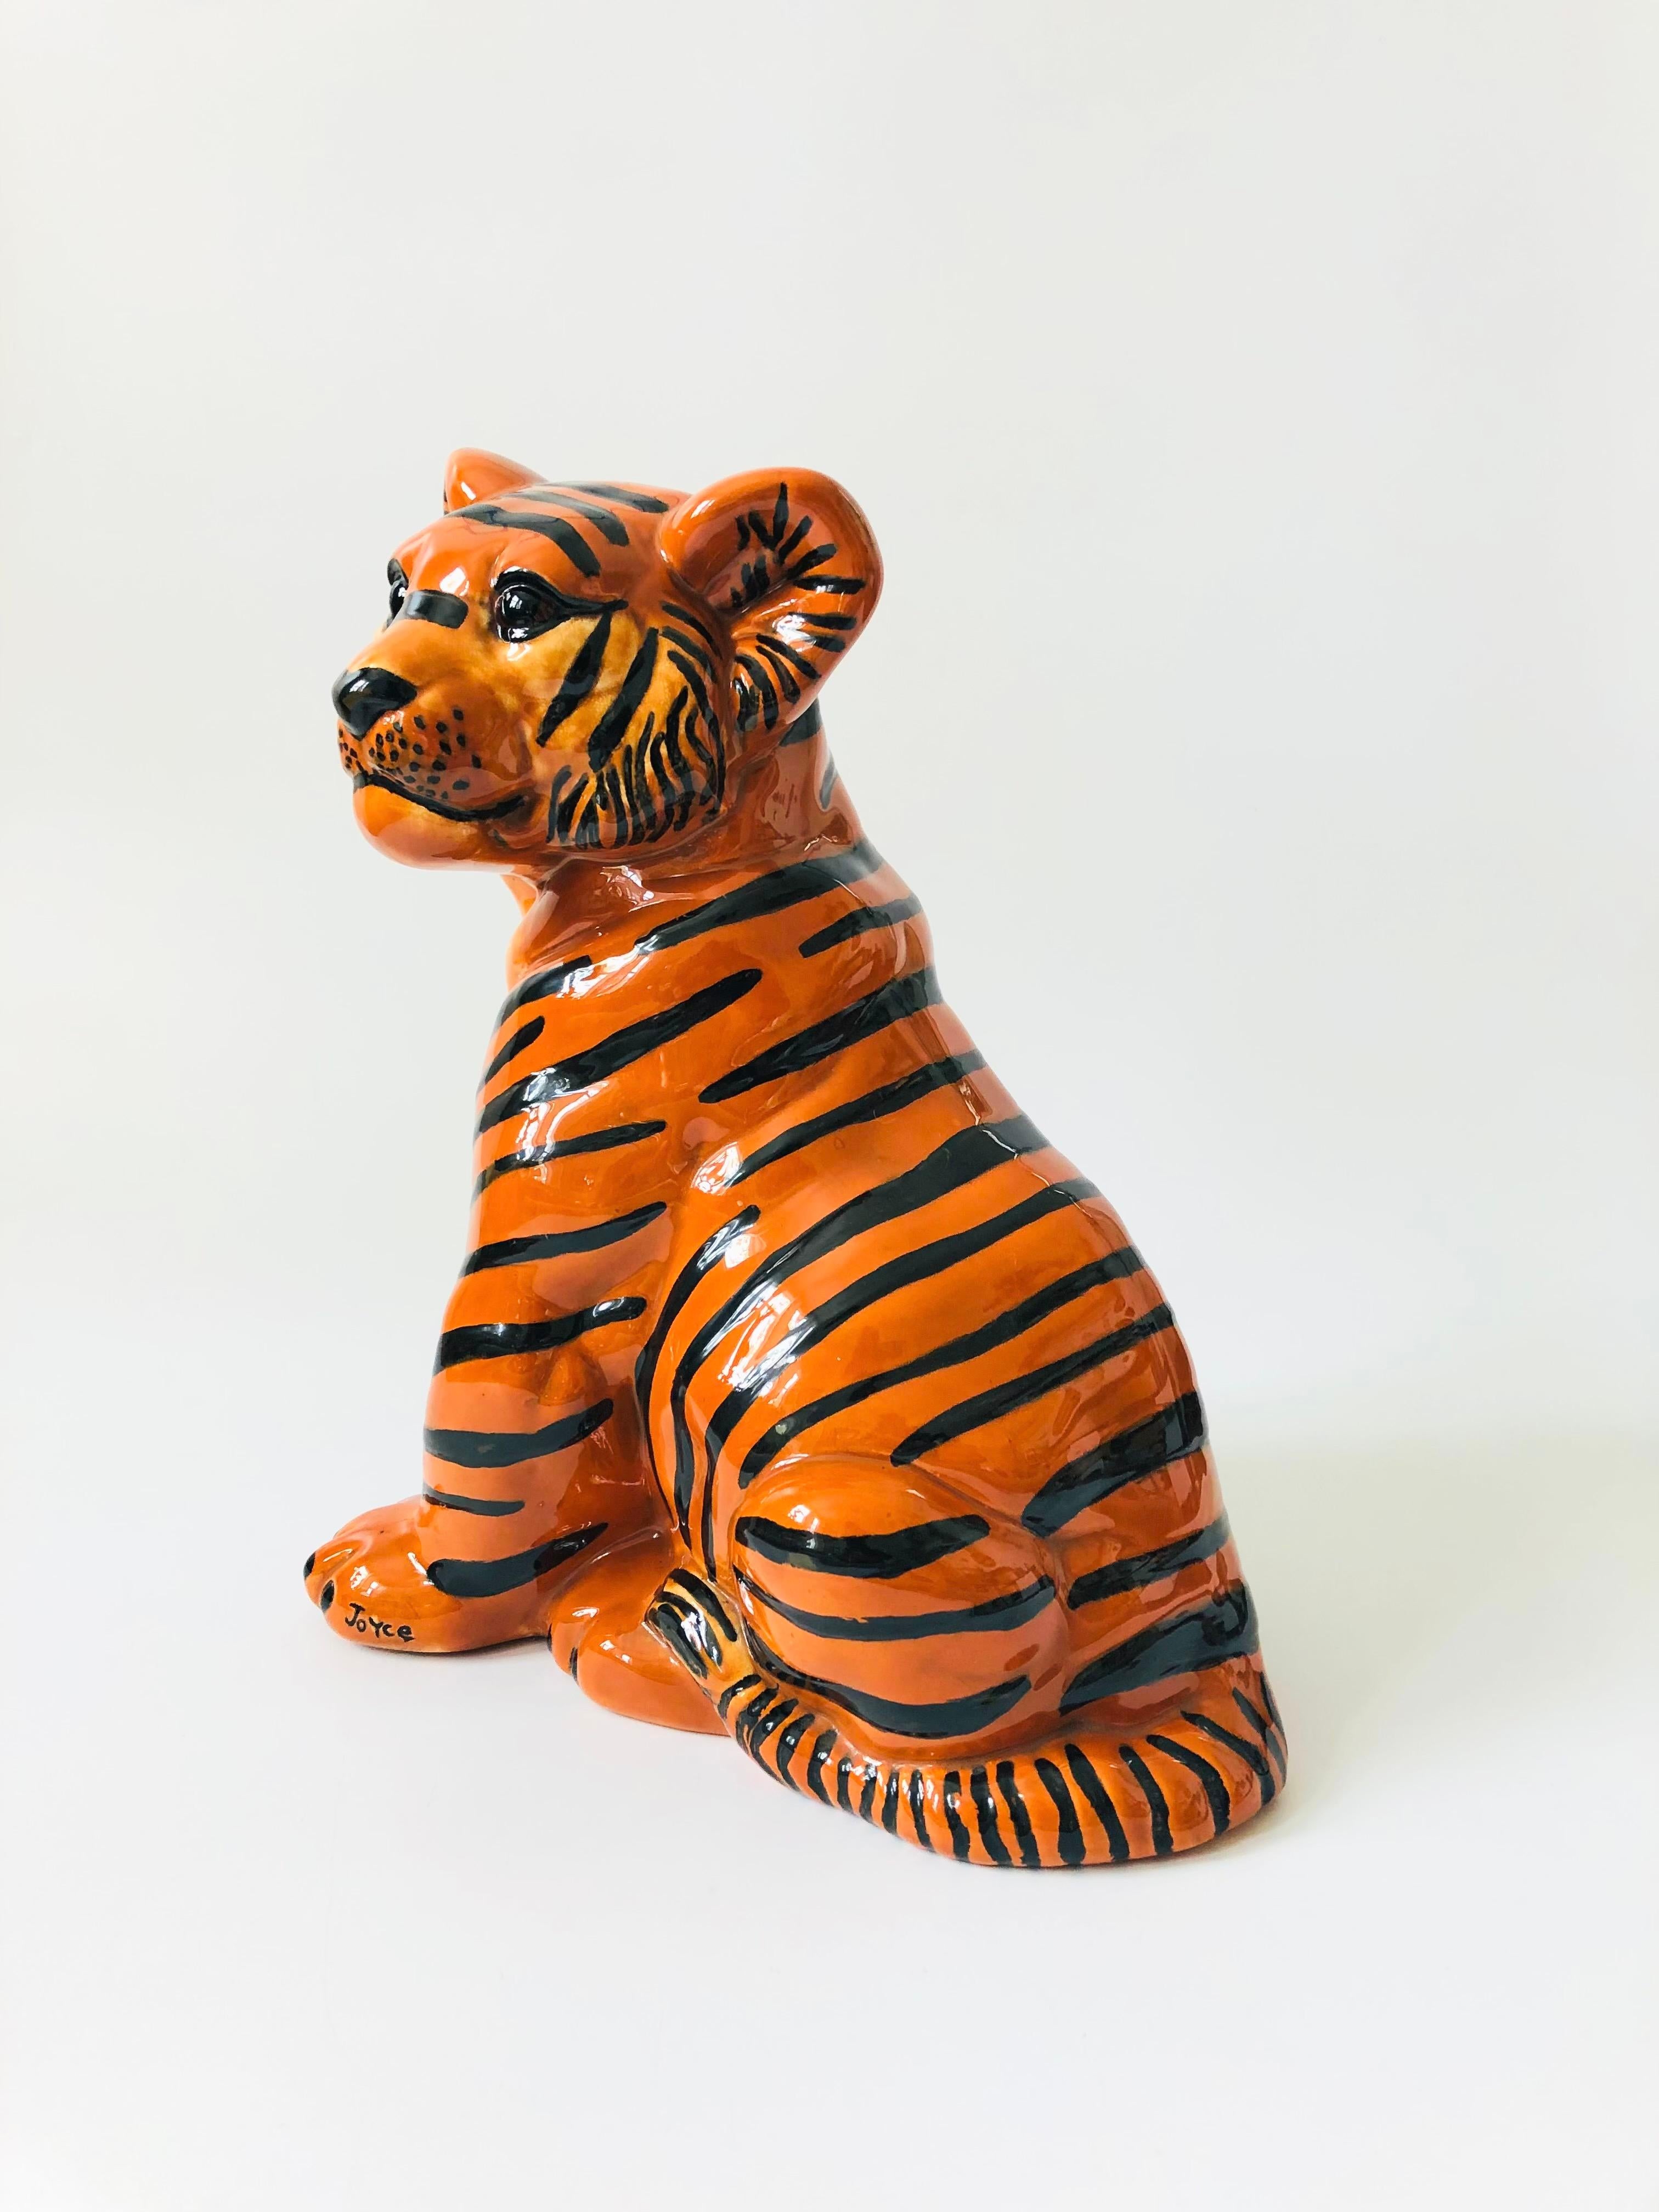 Post-Modern Large Vintage Ceramic Tiger Sculpture